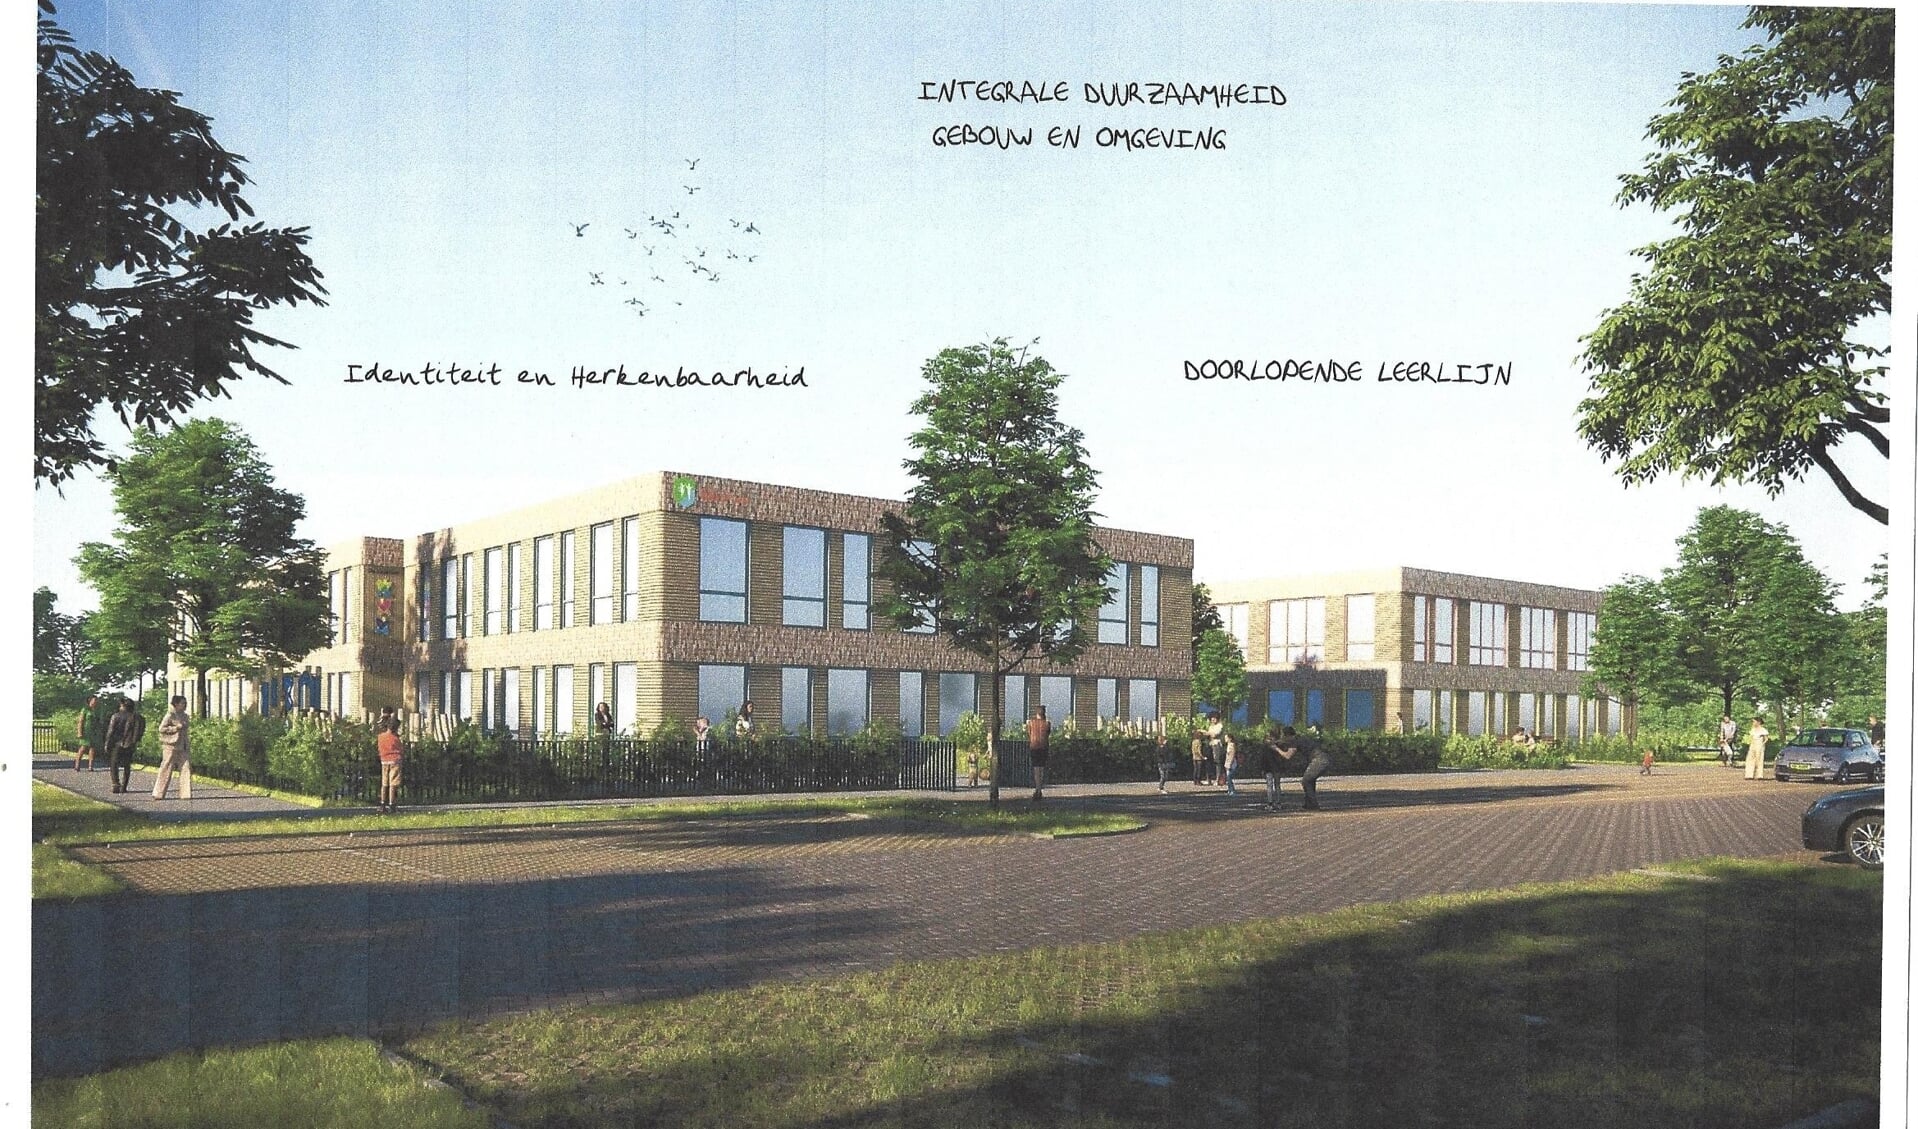 Het scholencomplex - zoals Made in Montfoort dat vorm zou willen geven op de locatie van de huidige sporthal.